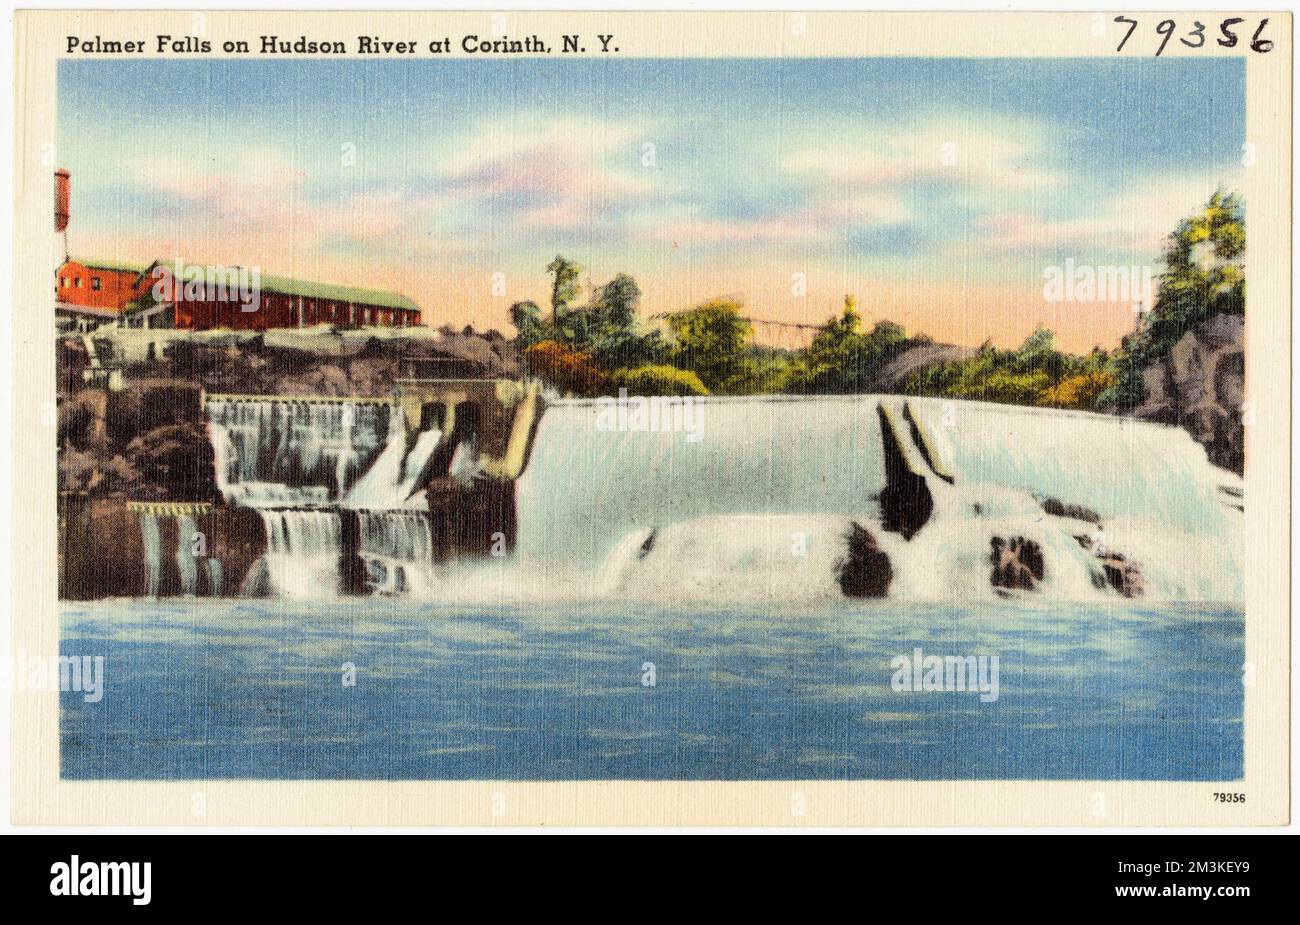 Palmer Falls sur la rivière Hudson à Corinth, N. Y. , Waterfall, Tichnor Brothers Collection, cartes postales des États-Unis Banque D'Images